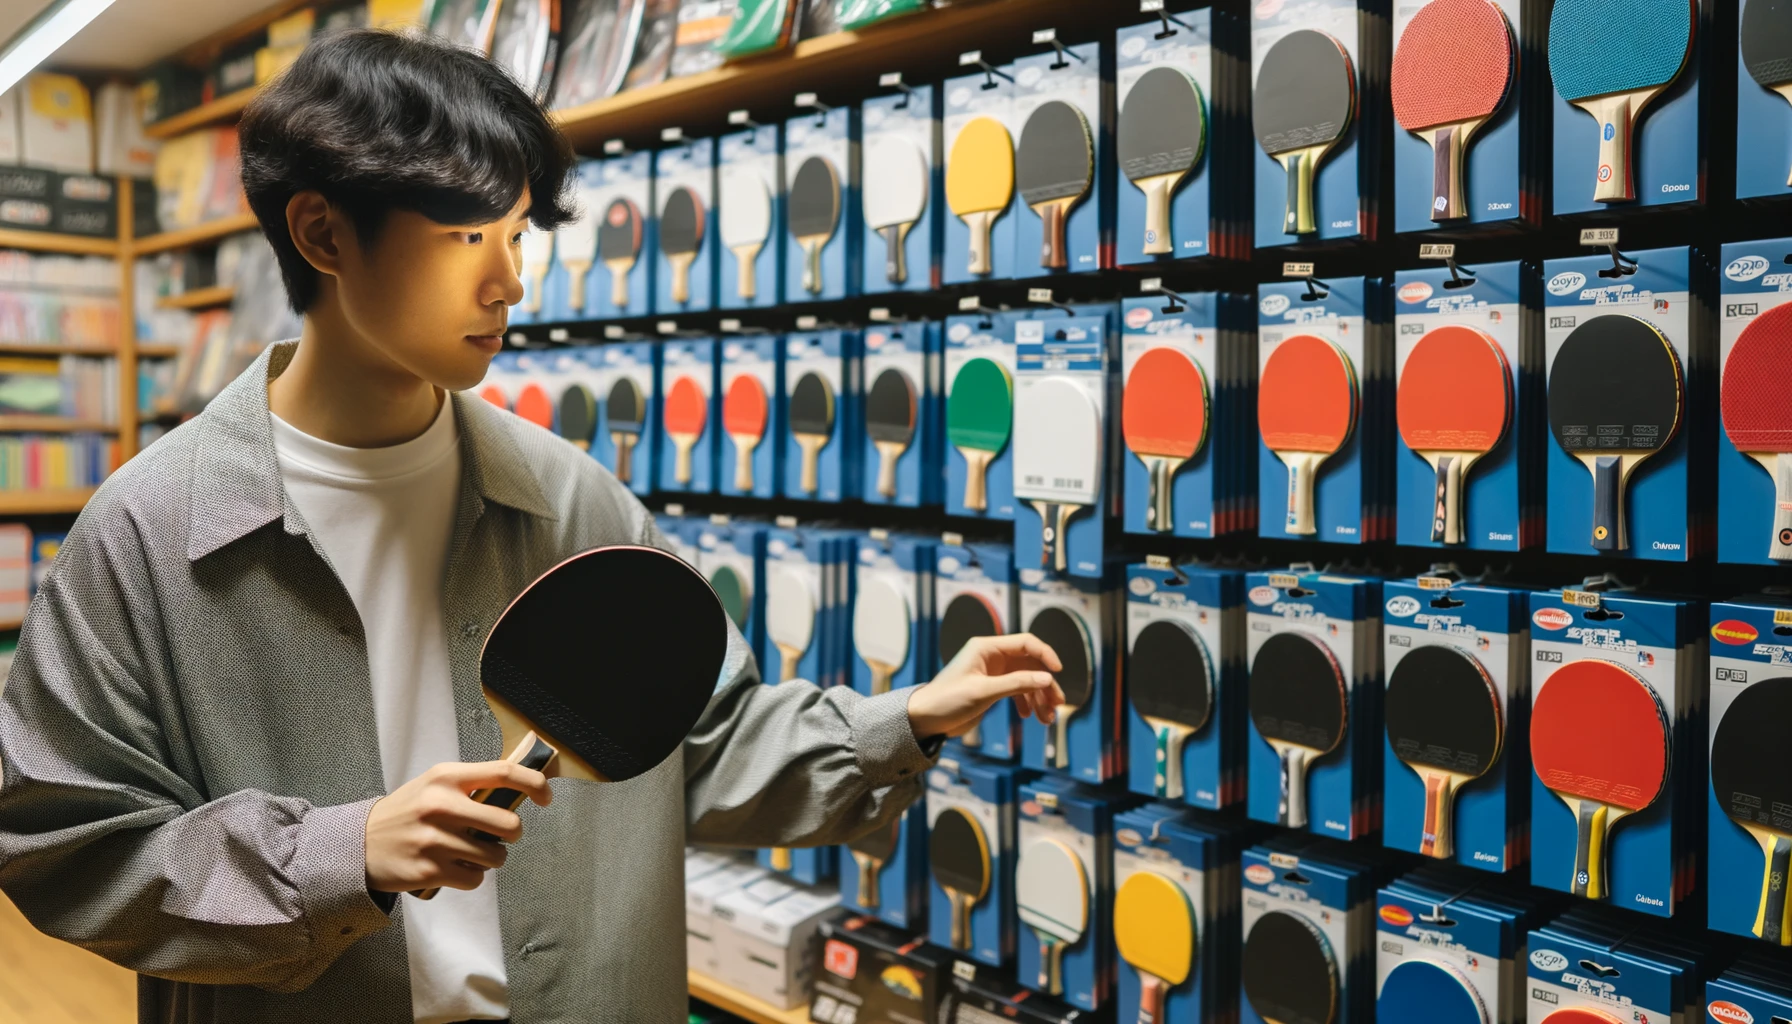 Foto einer Person asiatischer Abstammung, die in einem Sportgeschäft in einem Regal mit Tischtennisschlägern verschiedener Marken stöbert